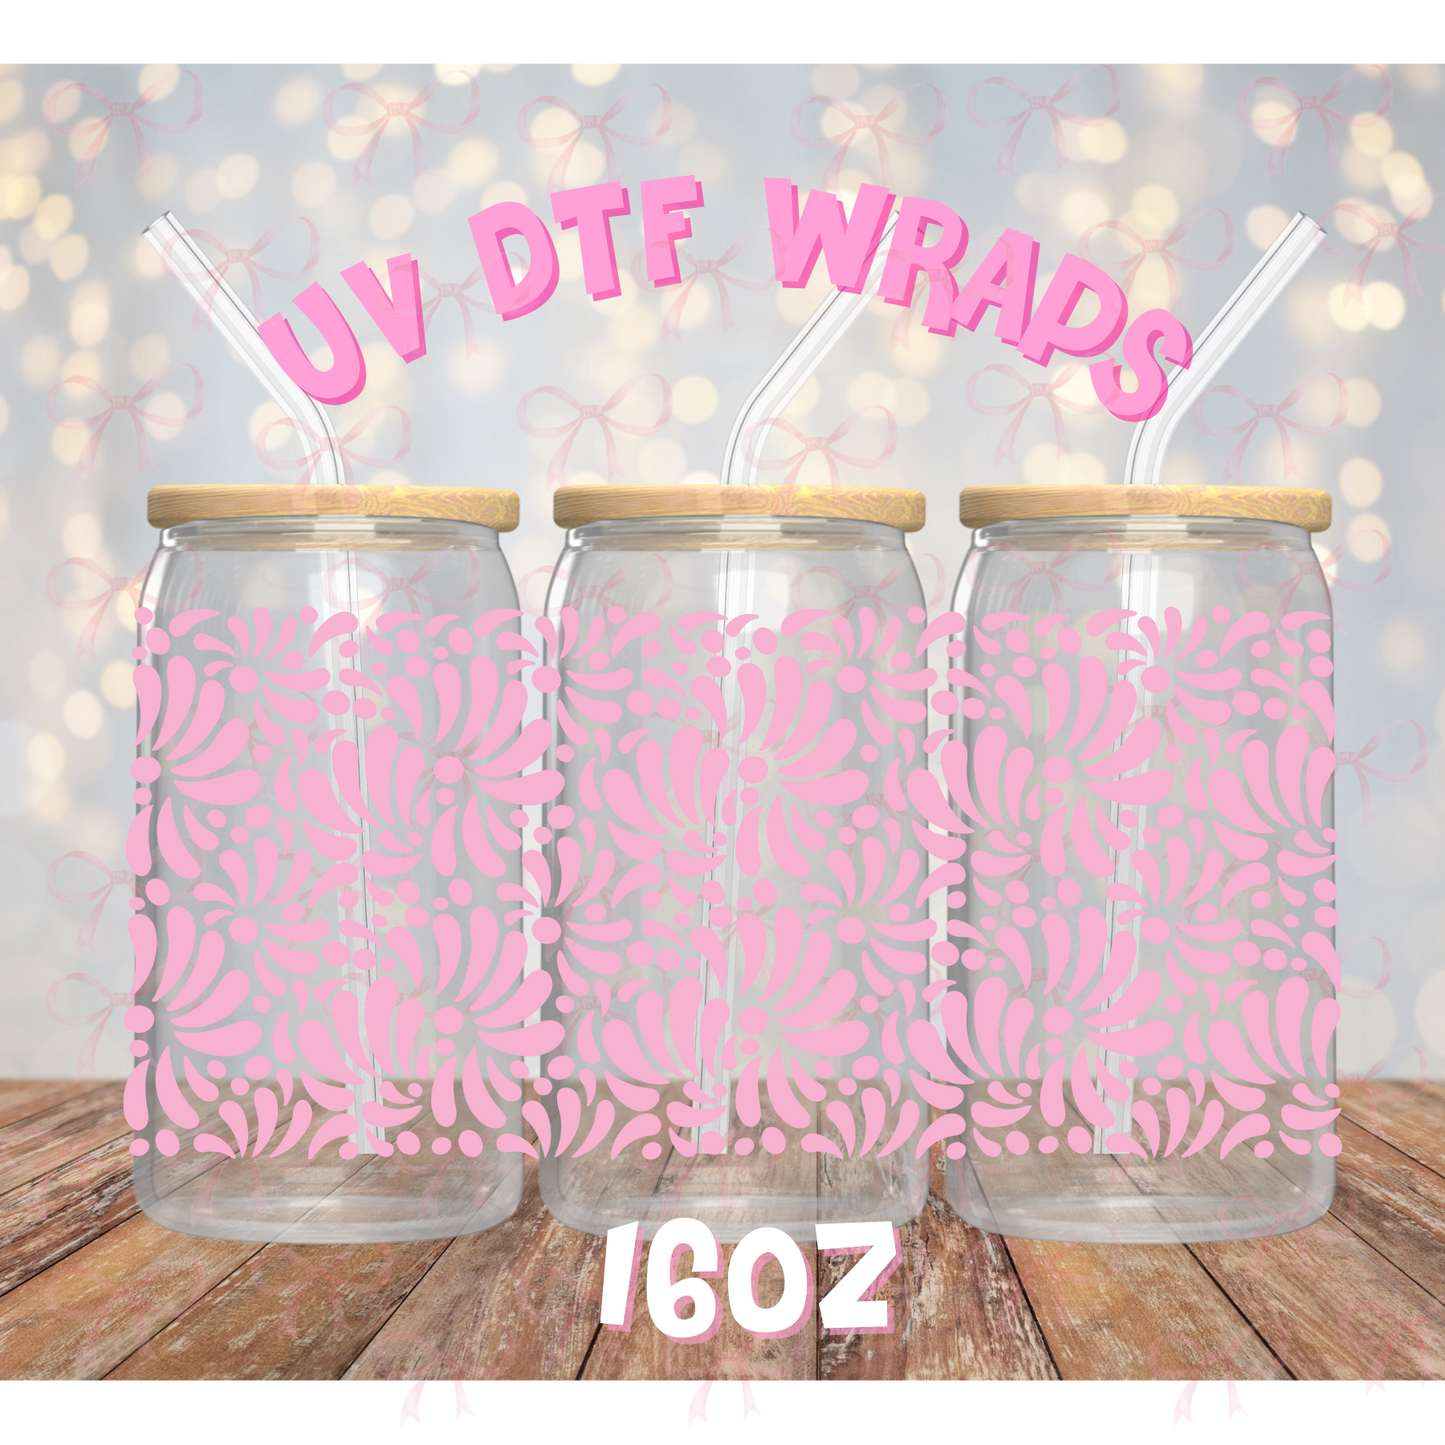 UV DTF WRAP- Talavera Light Pink